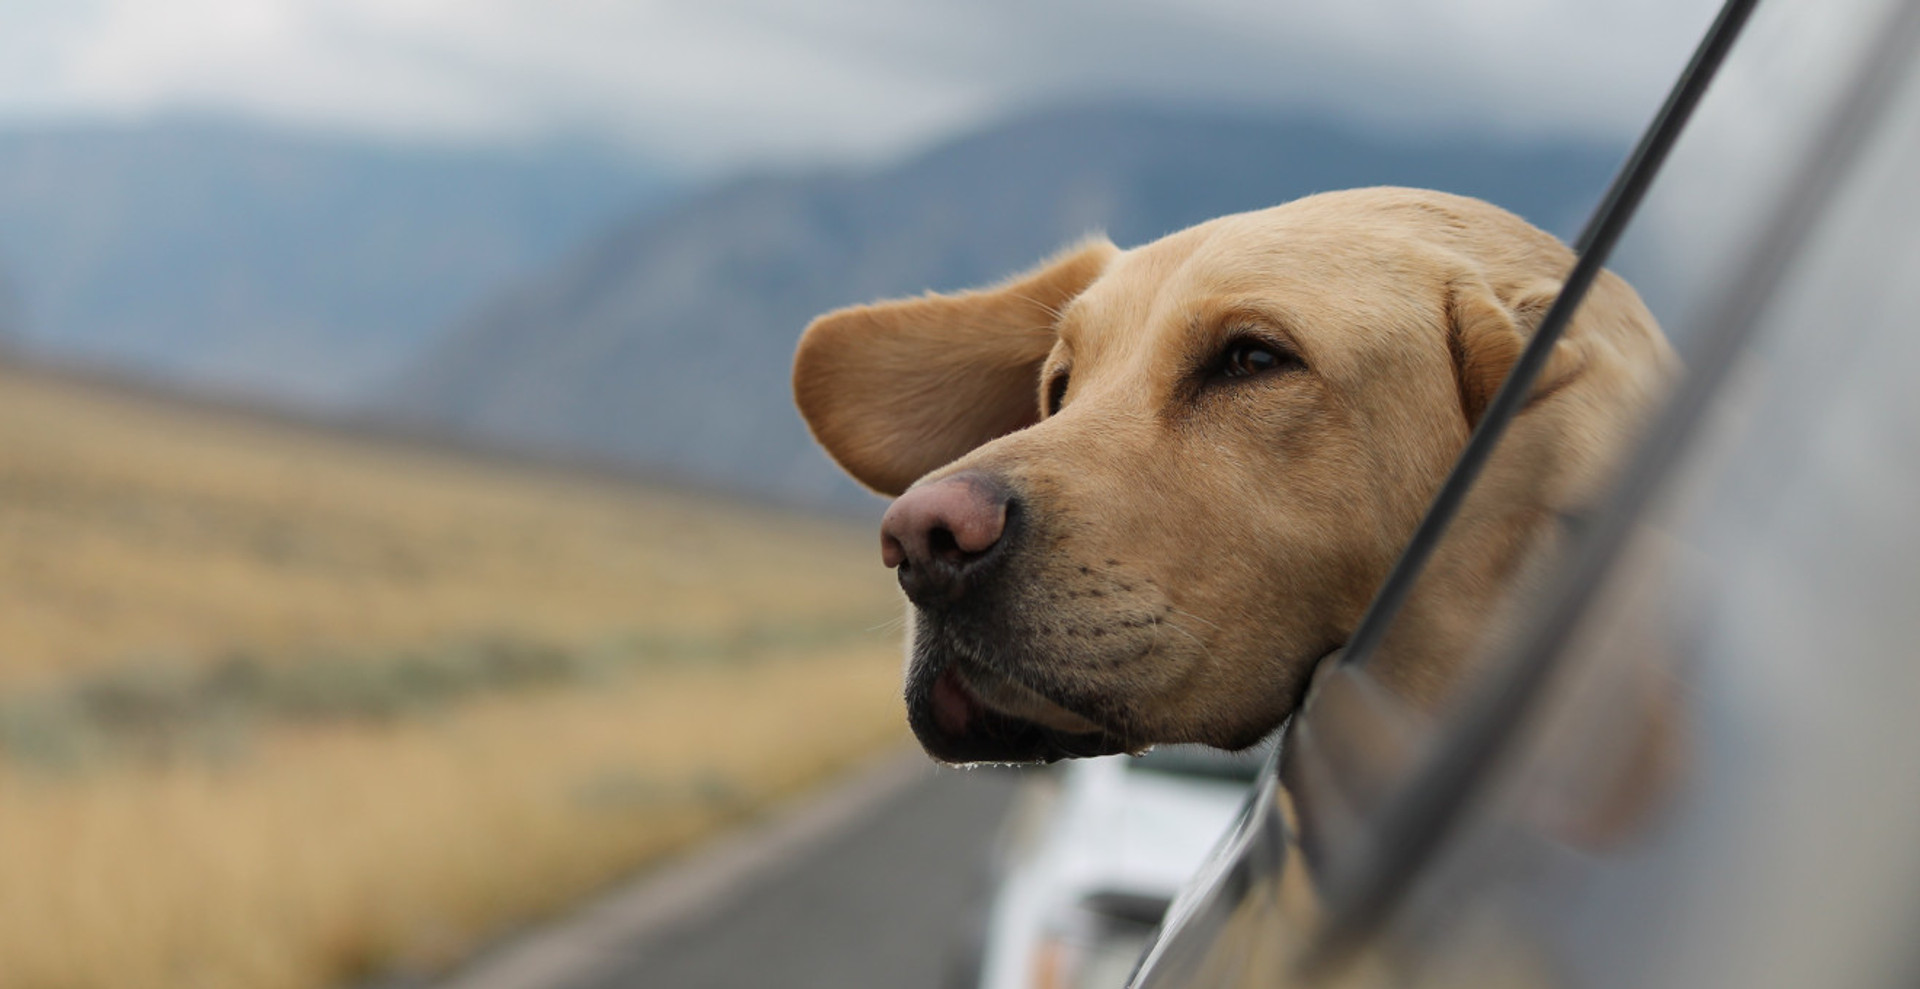 Подорож удвох: я і пес. Як зробити подію радісною для обох? Поради зоопсихологині BRIT